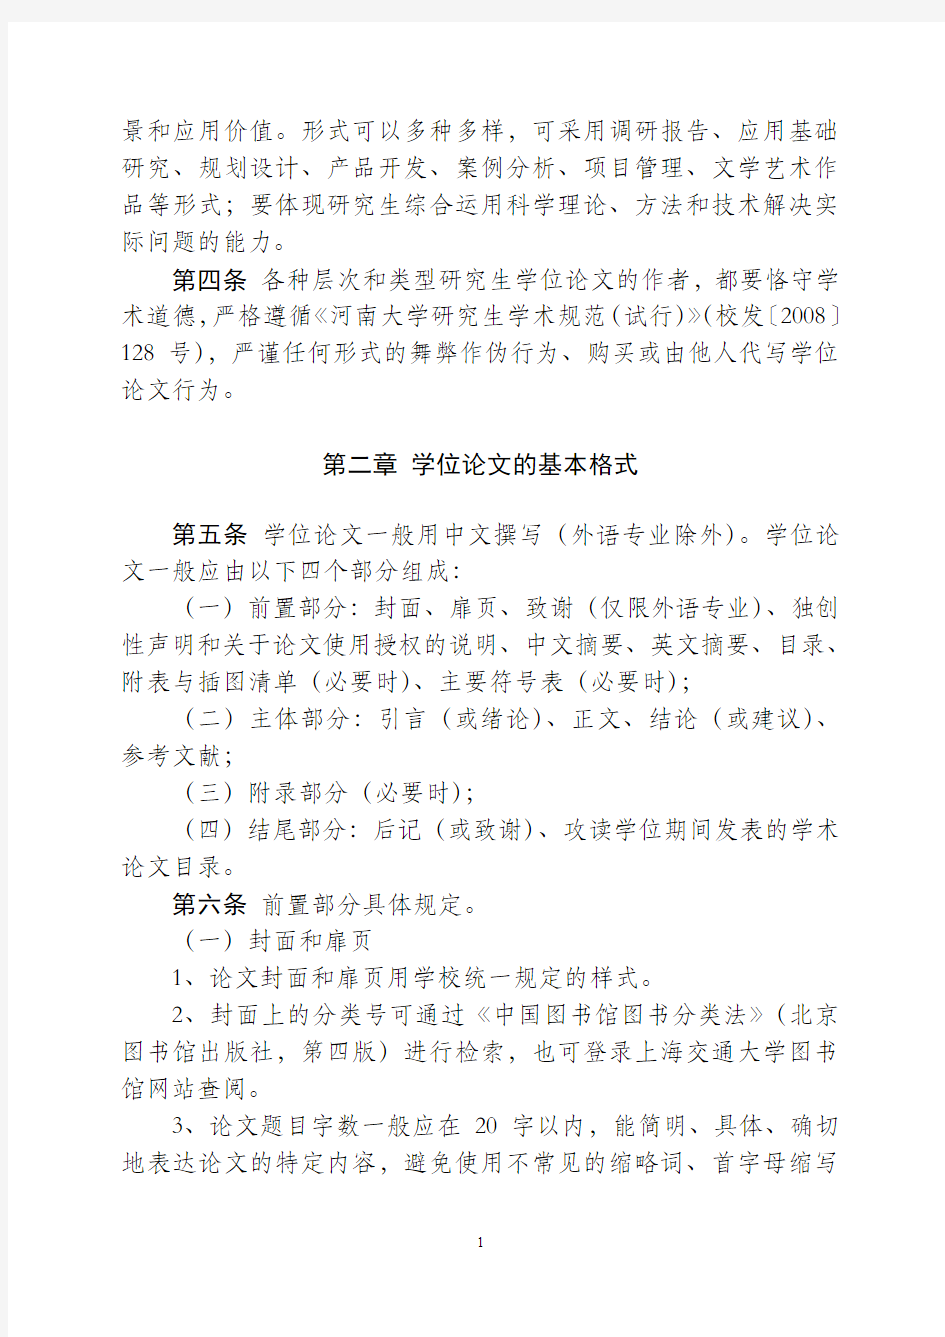 河南大学研究生学位论文基本要求与书写格式的规定